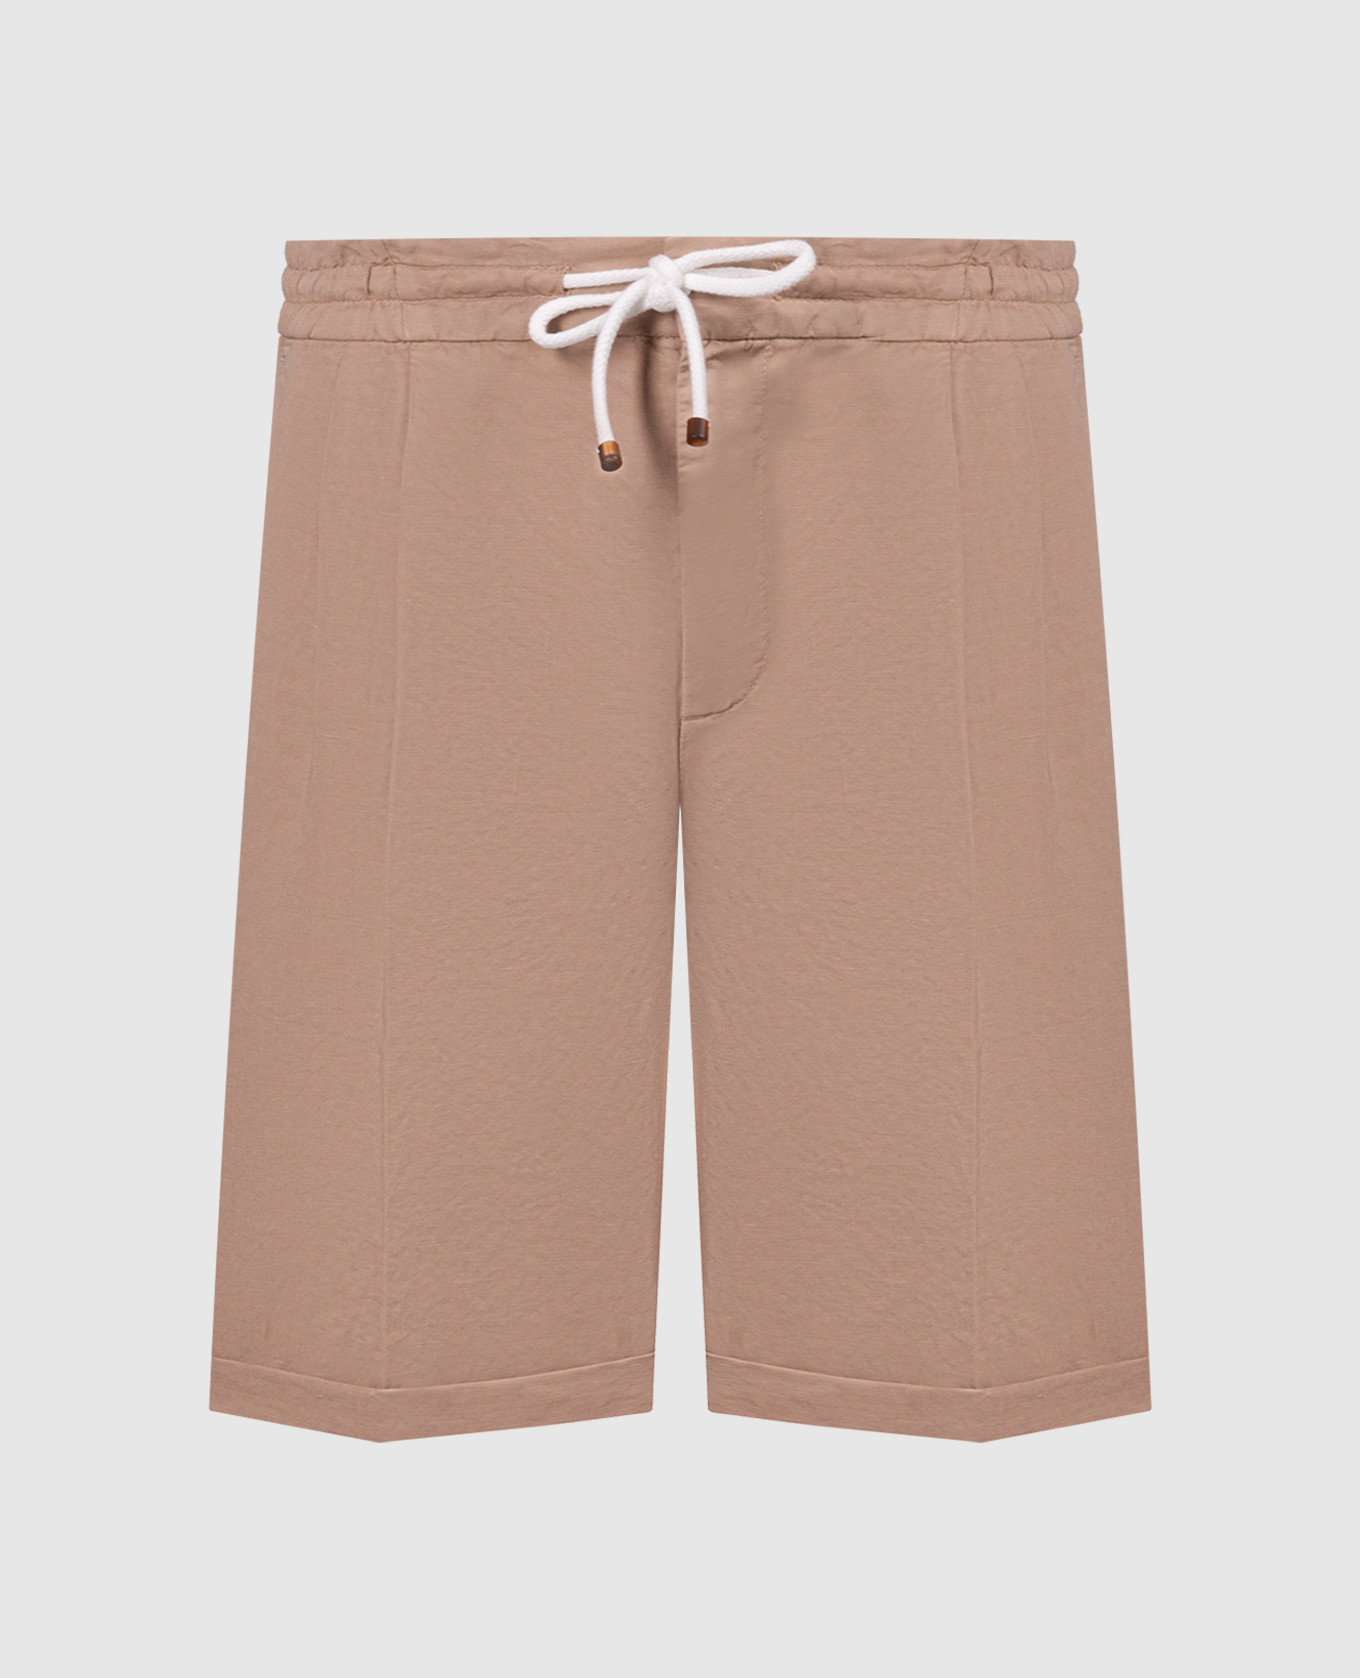 Brown linen shorts